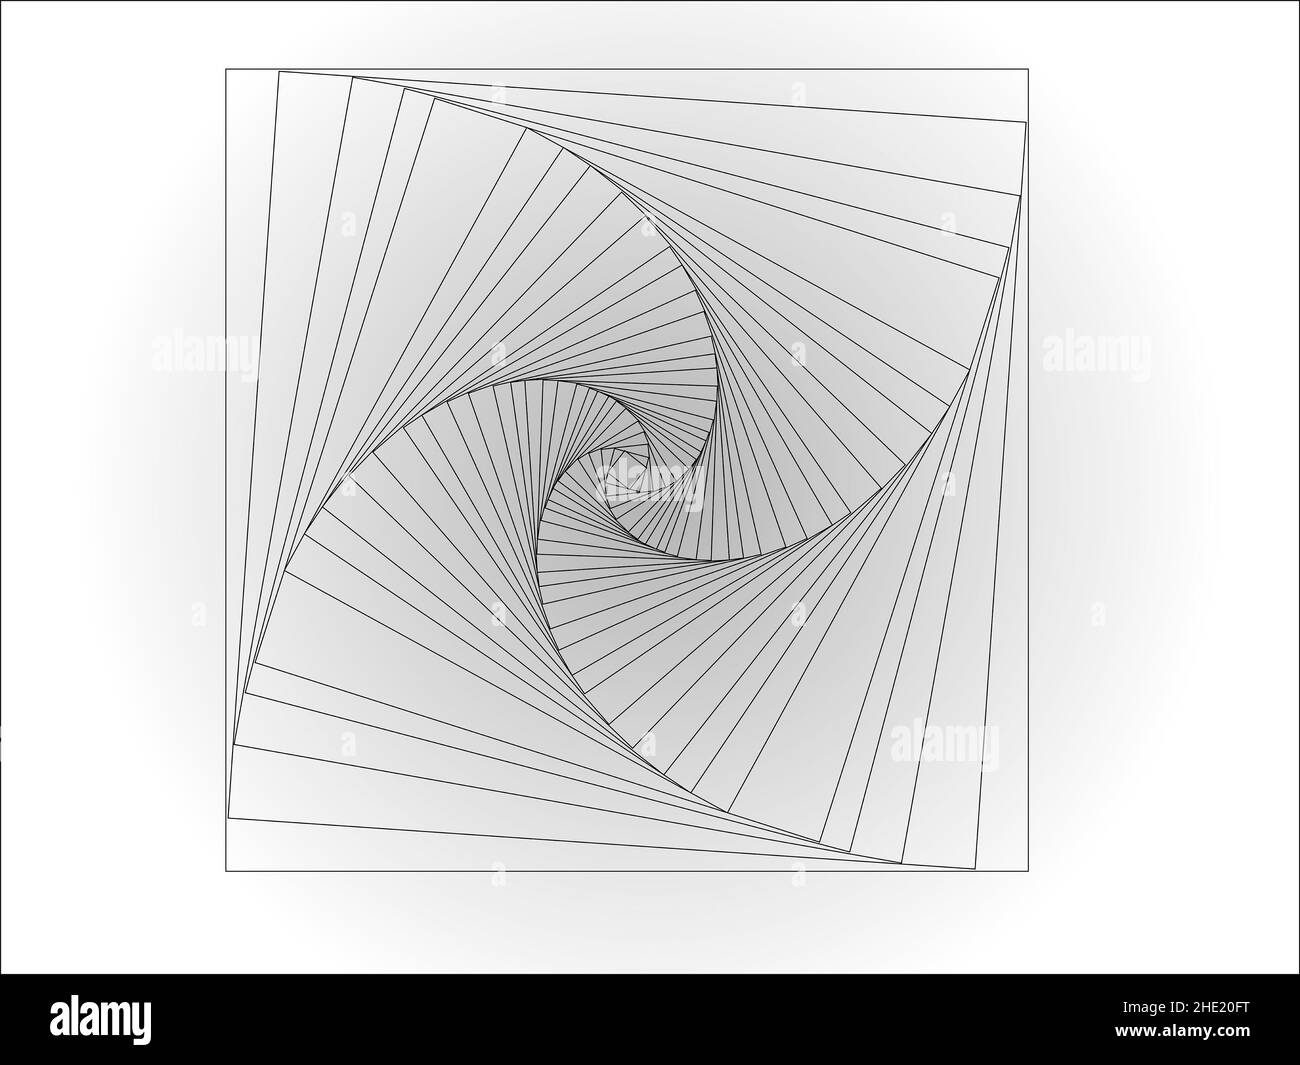 Vektorgrafiken, die als Ergebnis einer Reihe von geometrischen Transformationen eines Quadrats und der Verwendung von tonalen Übergängen erhalten wurden. Stockfoto